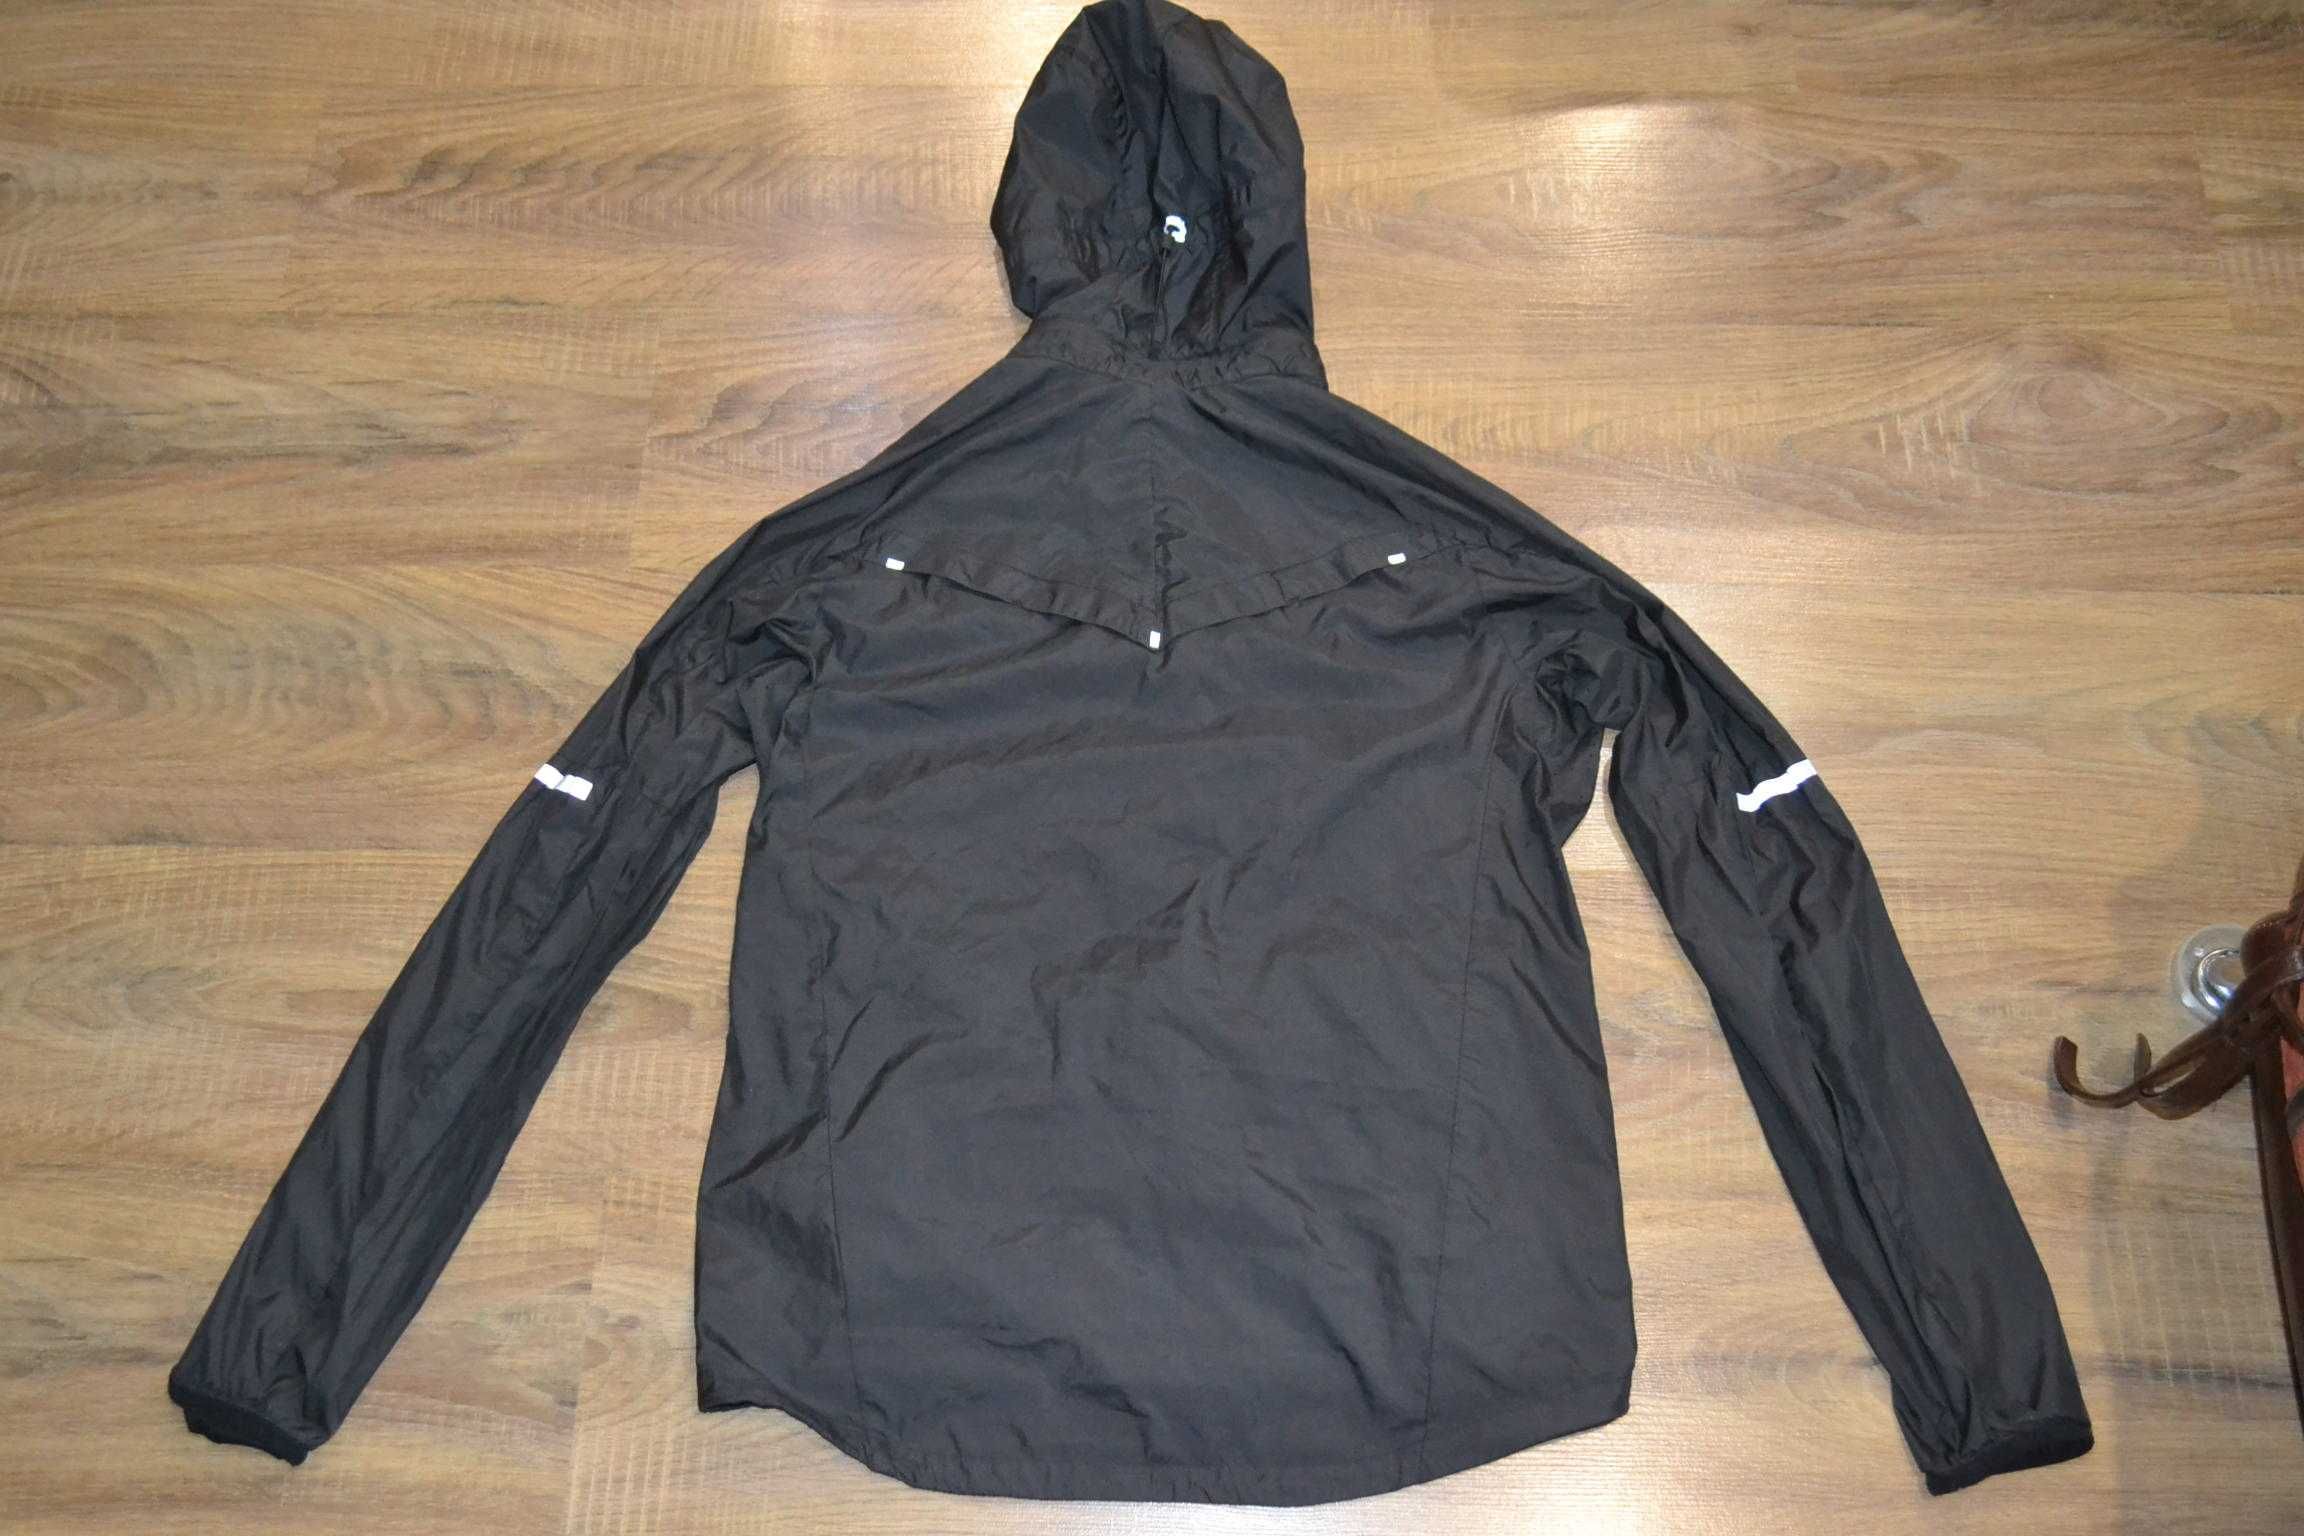 куртка ветровка Nike vapor jacket M мужская оригинал спортивная